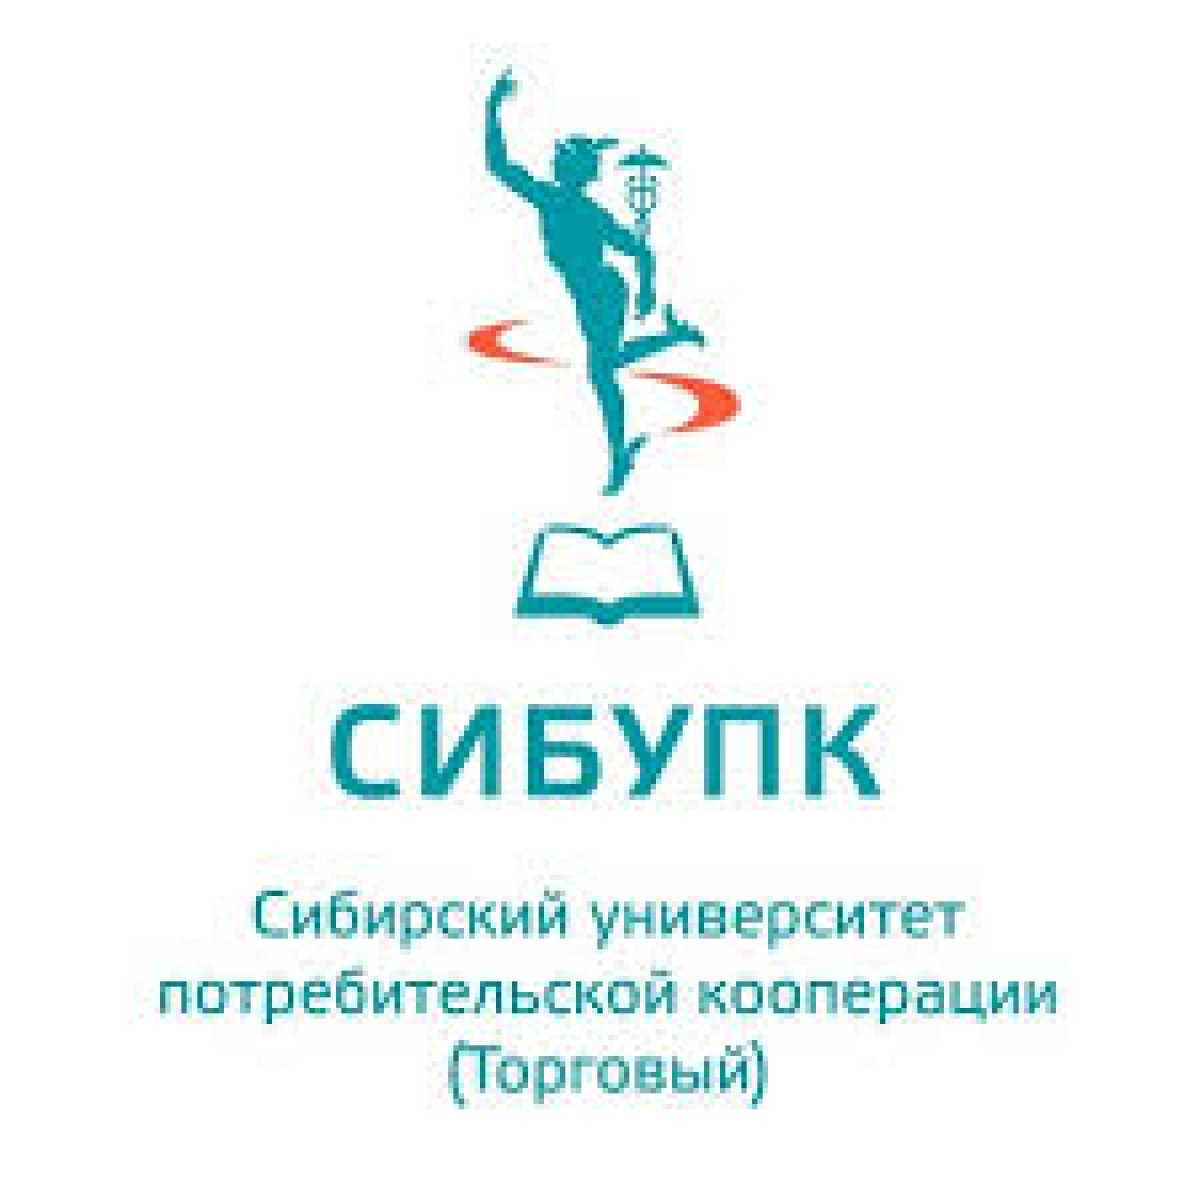 15 июня 2020 г. состоится Всероссийская (национальная) научно-практическая конференция